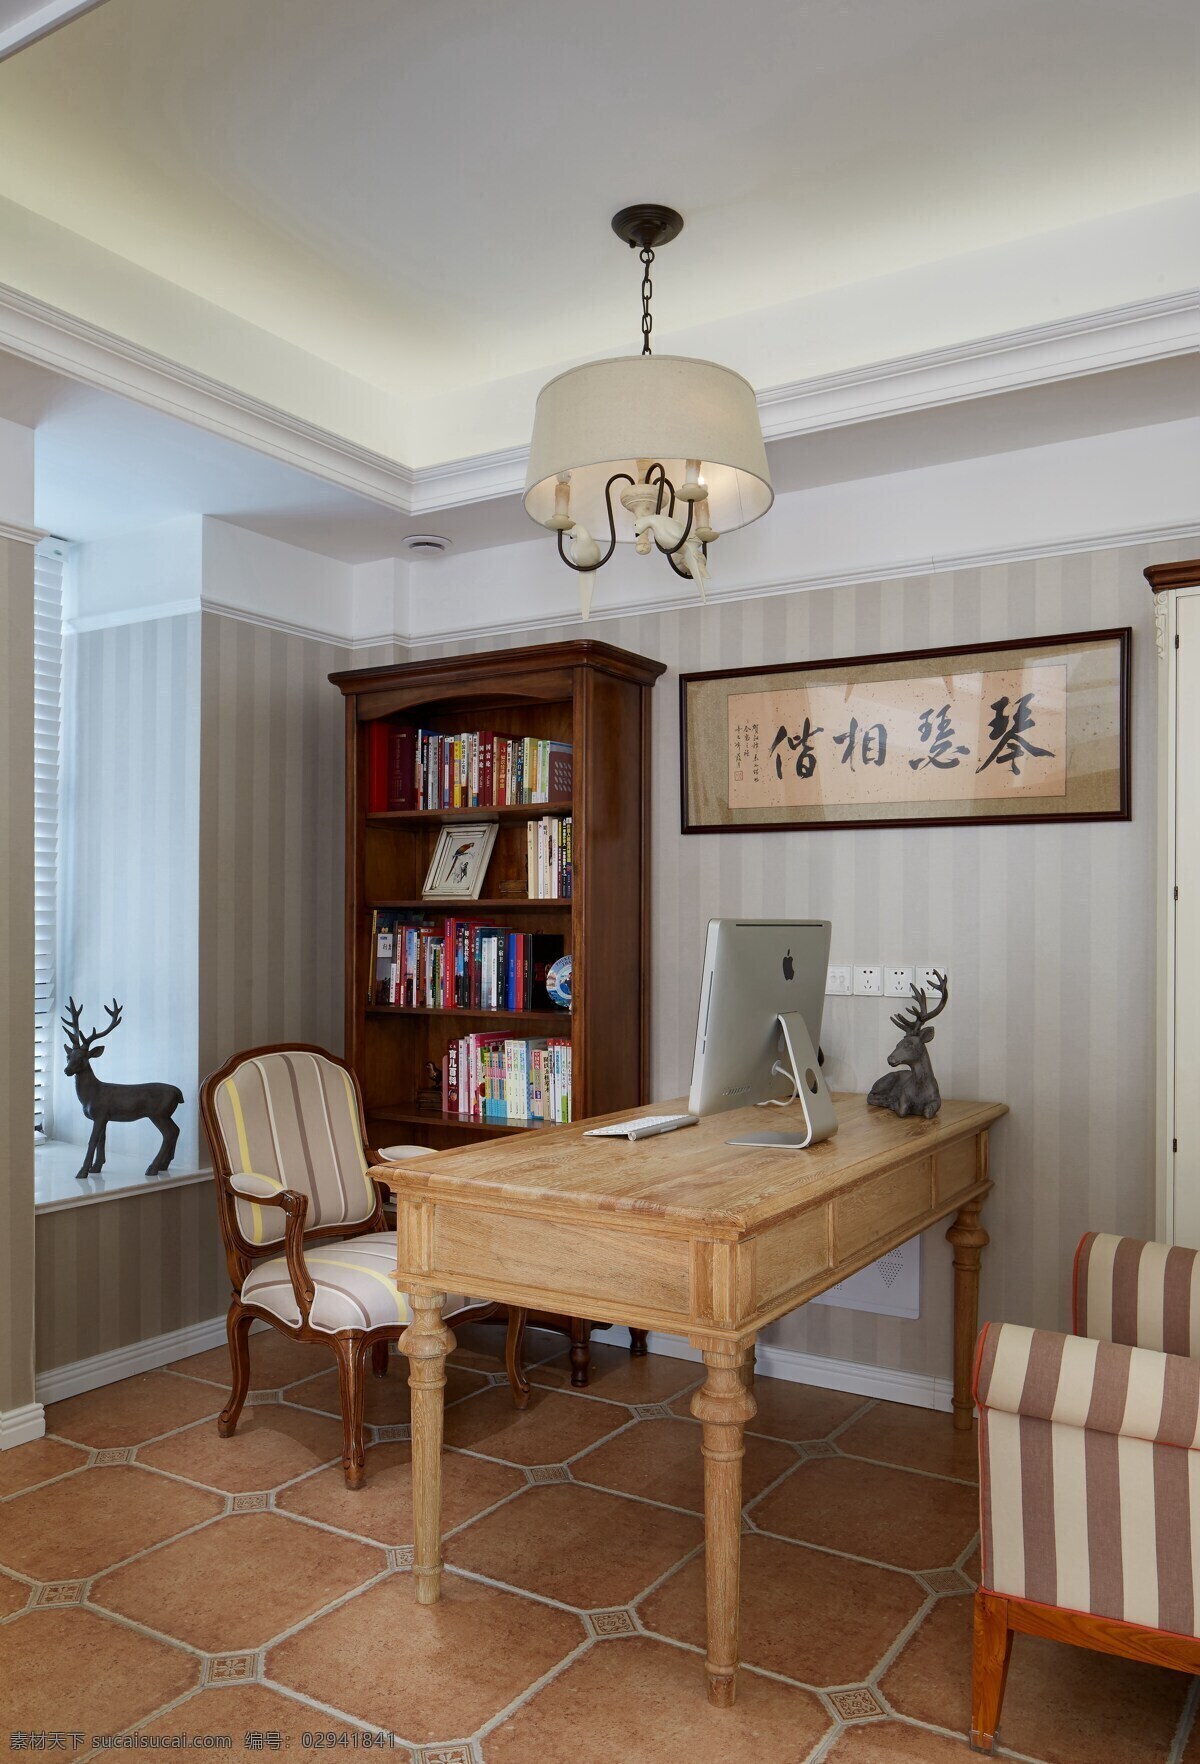 创意 传统 中式 书房 装修 效果图 复古吊灯 羚羊摆件 木制书桌 书画挂画 书籍 相框摆件